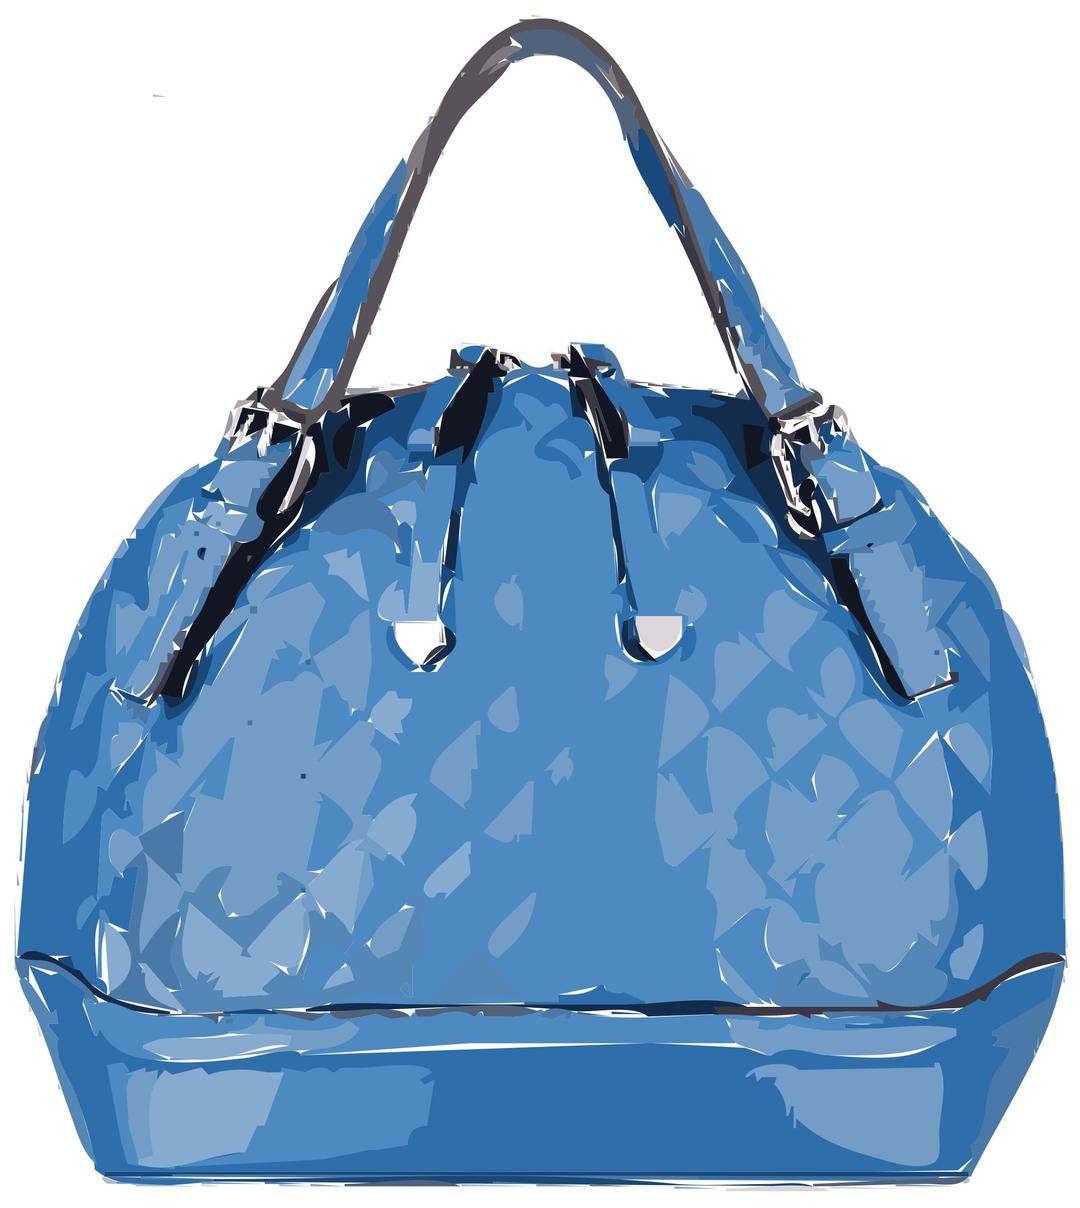 Blue Patterned Leather Handbag without logo png transparent